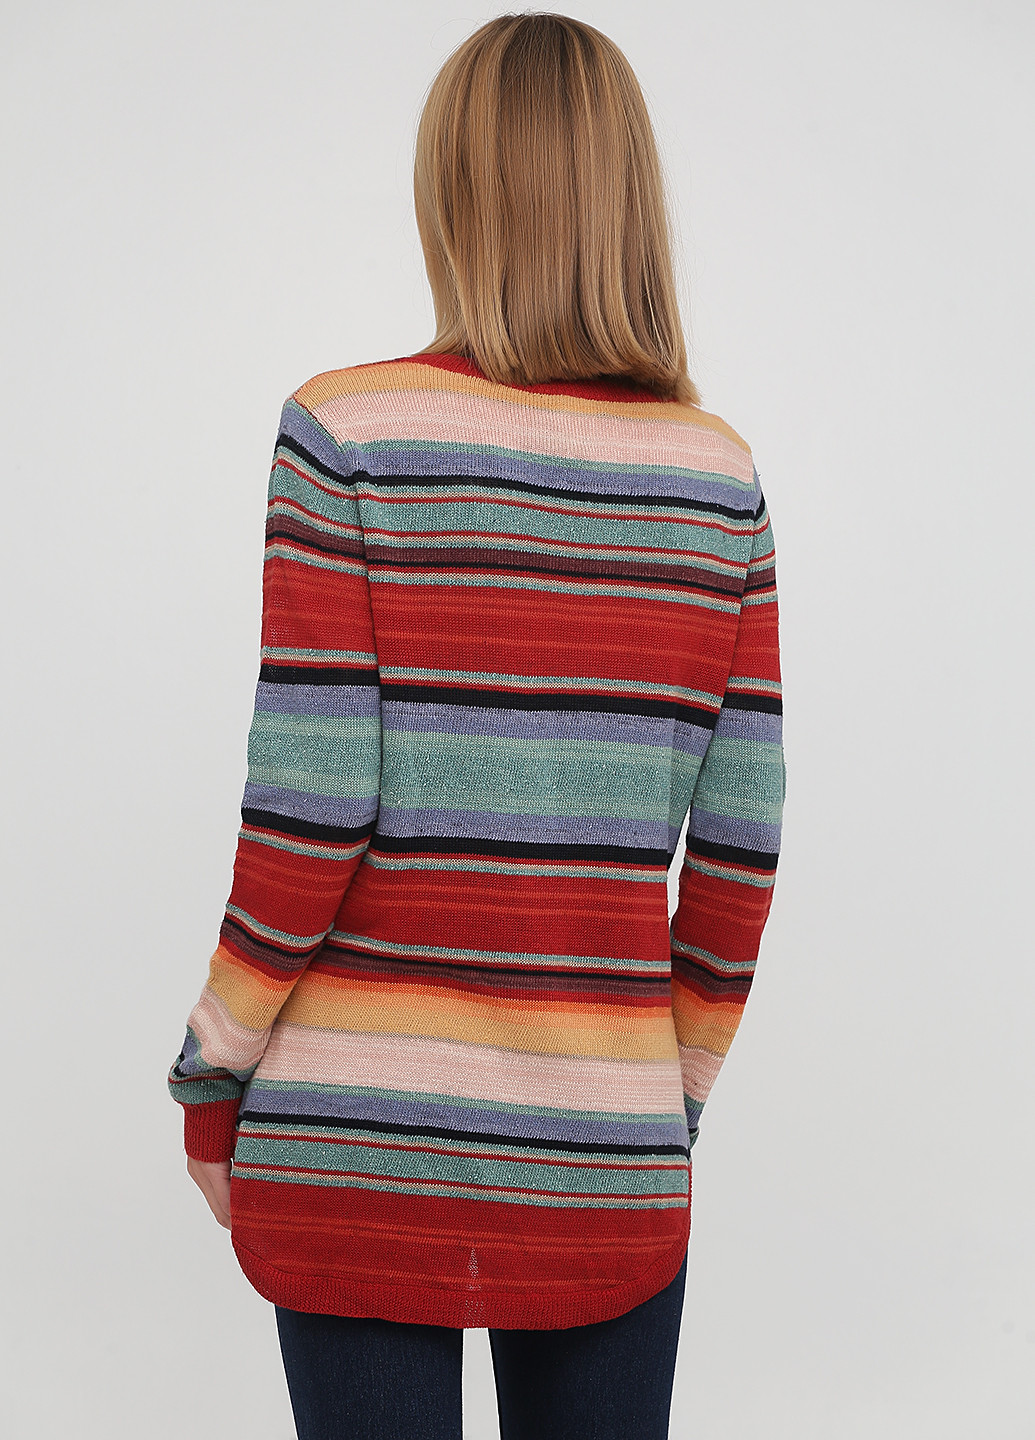 Комбинированный демисезонный пуловер пуловер Ralph Lauren